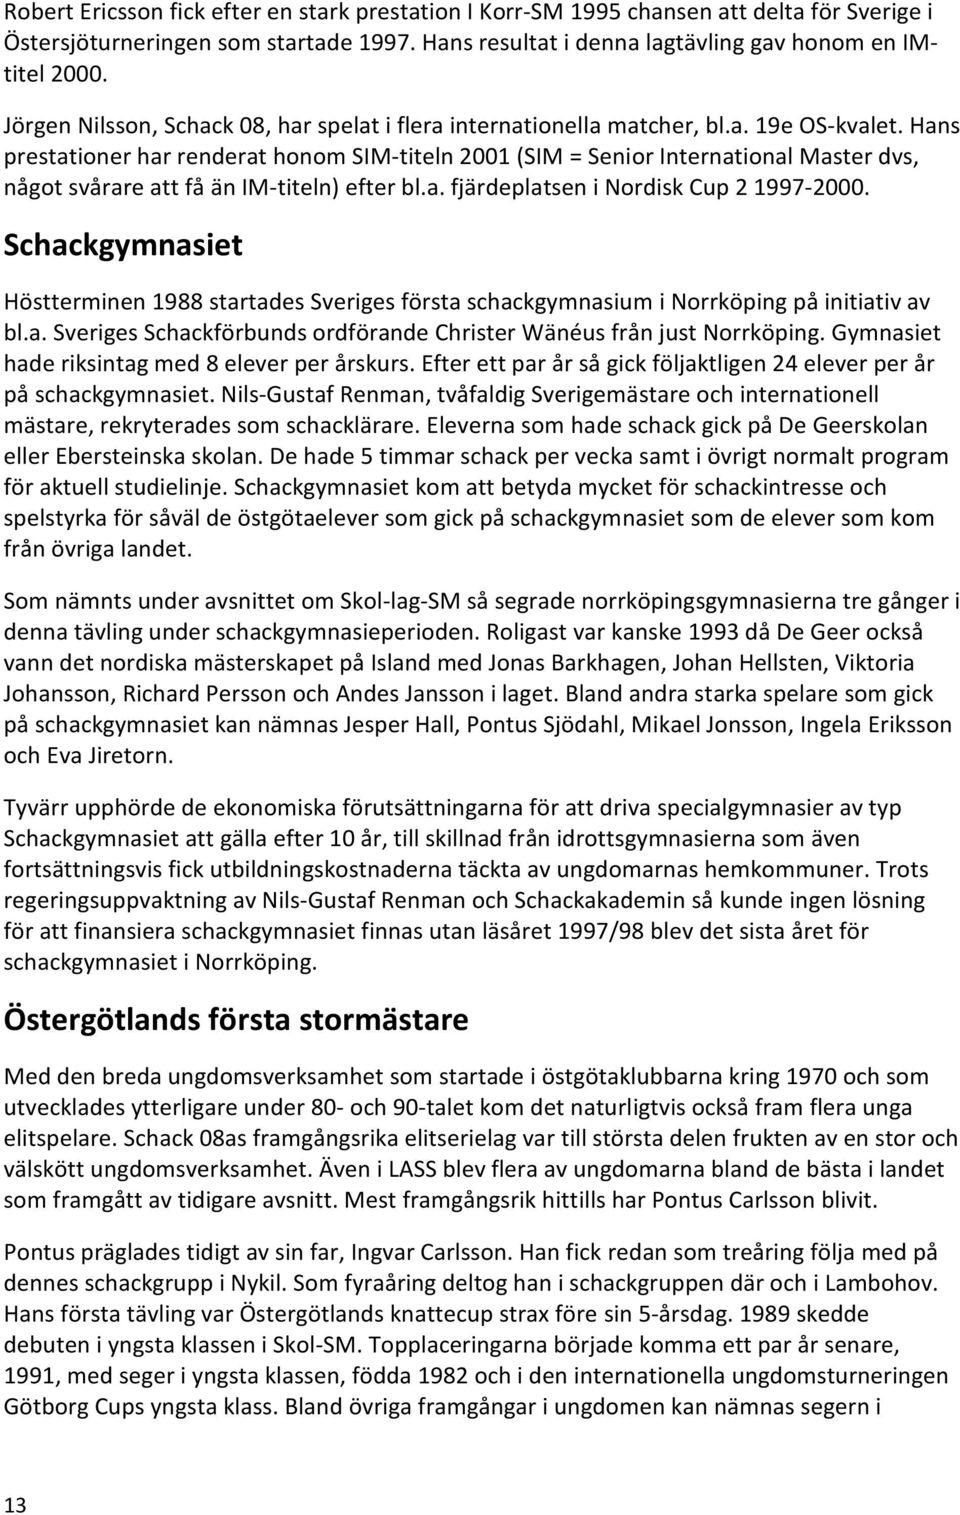 Östergötlands schackförbund 100 år. de senaste 30 åren - PDF ...